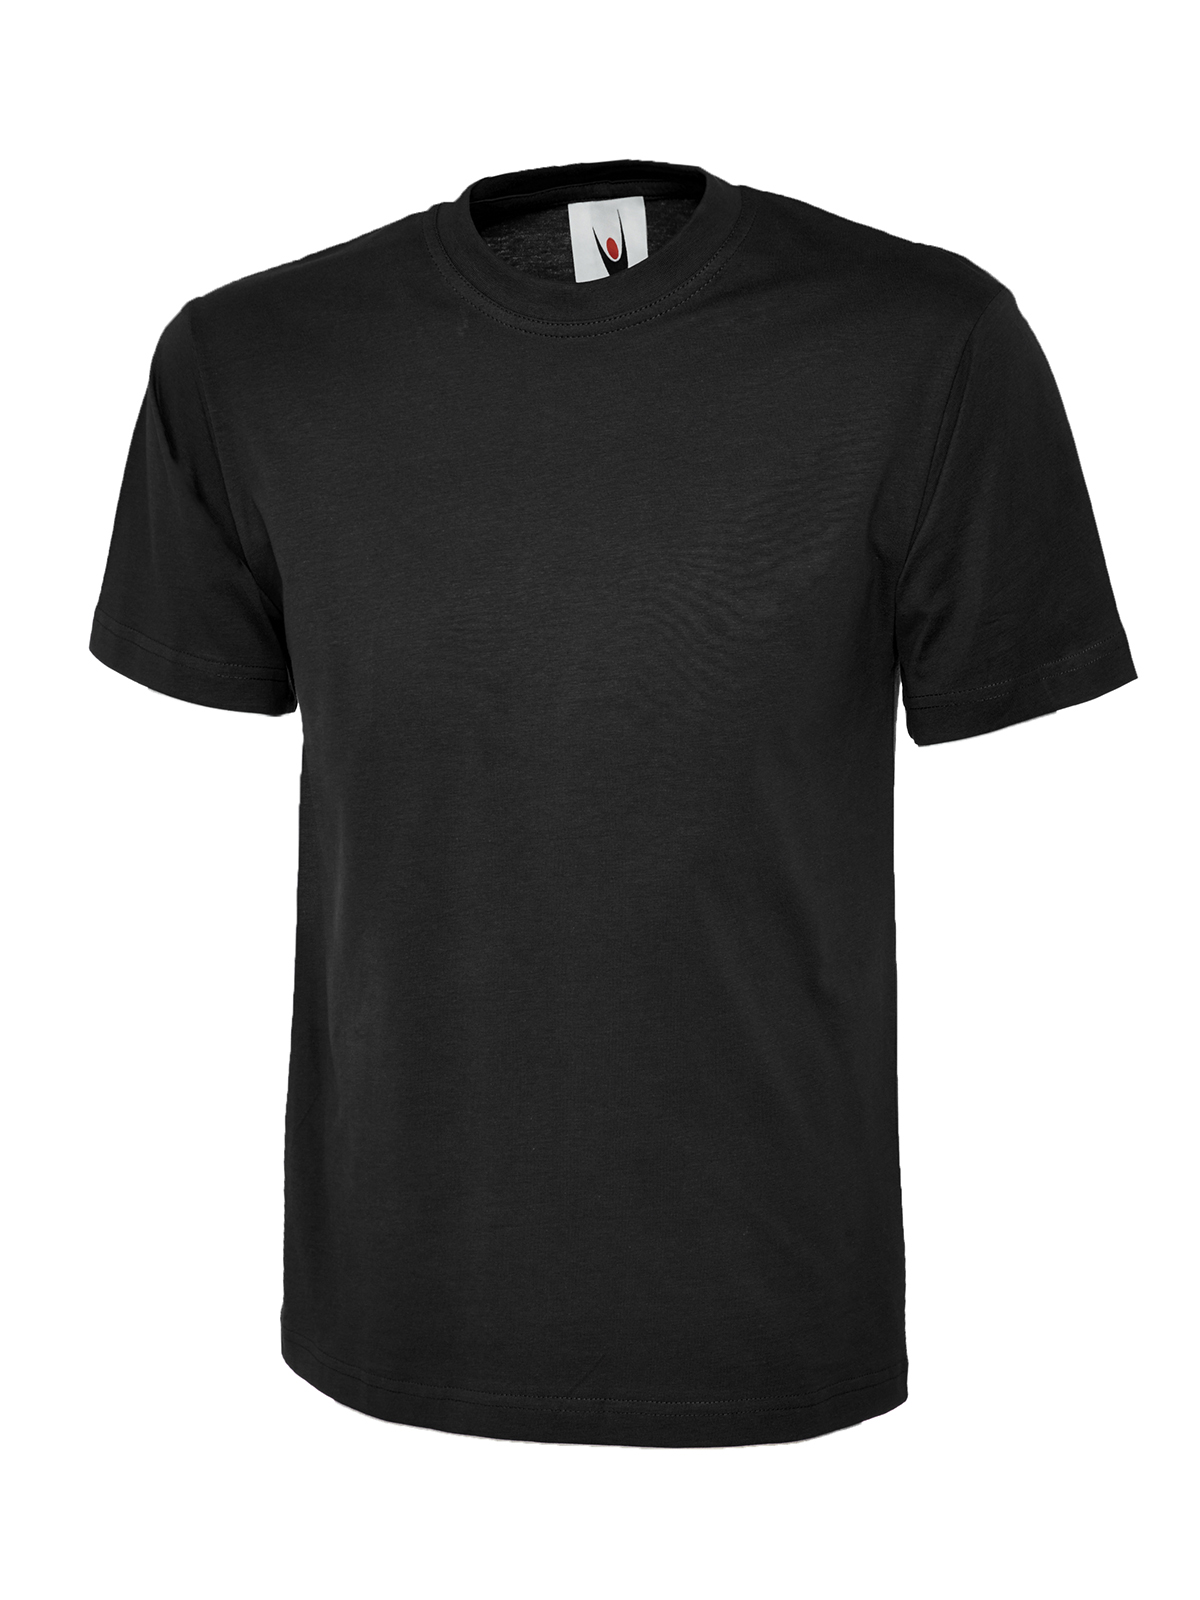 Uc301 180gsm classic t-shirt - black - 5xl